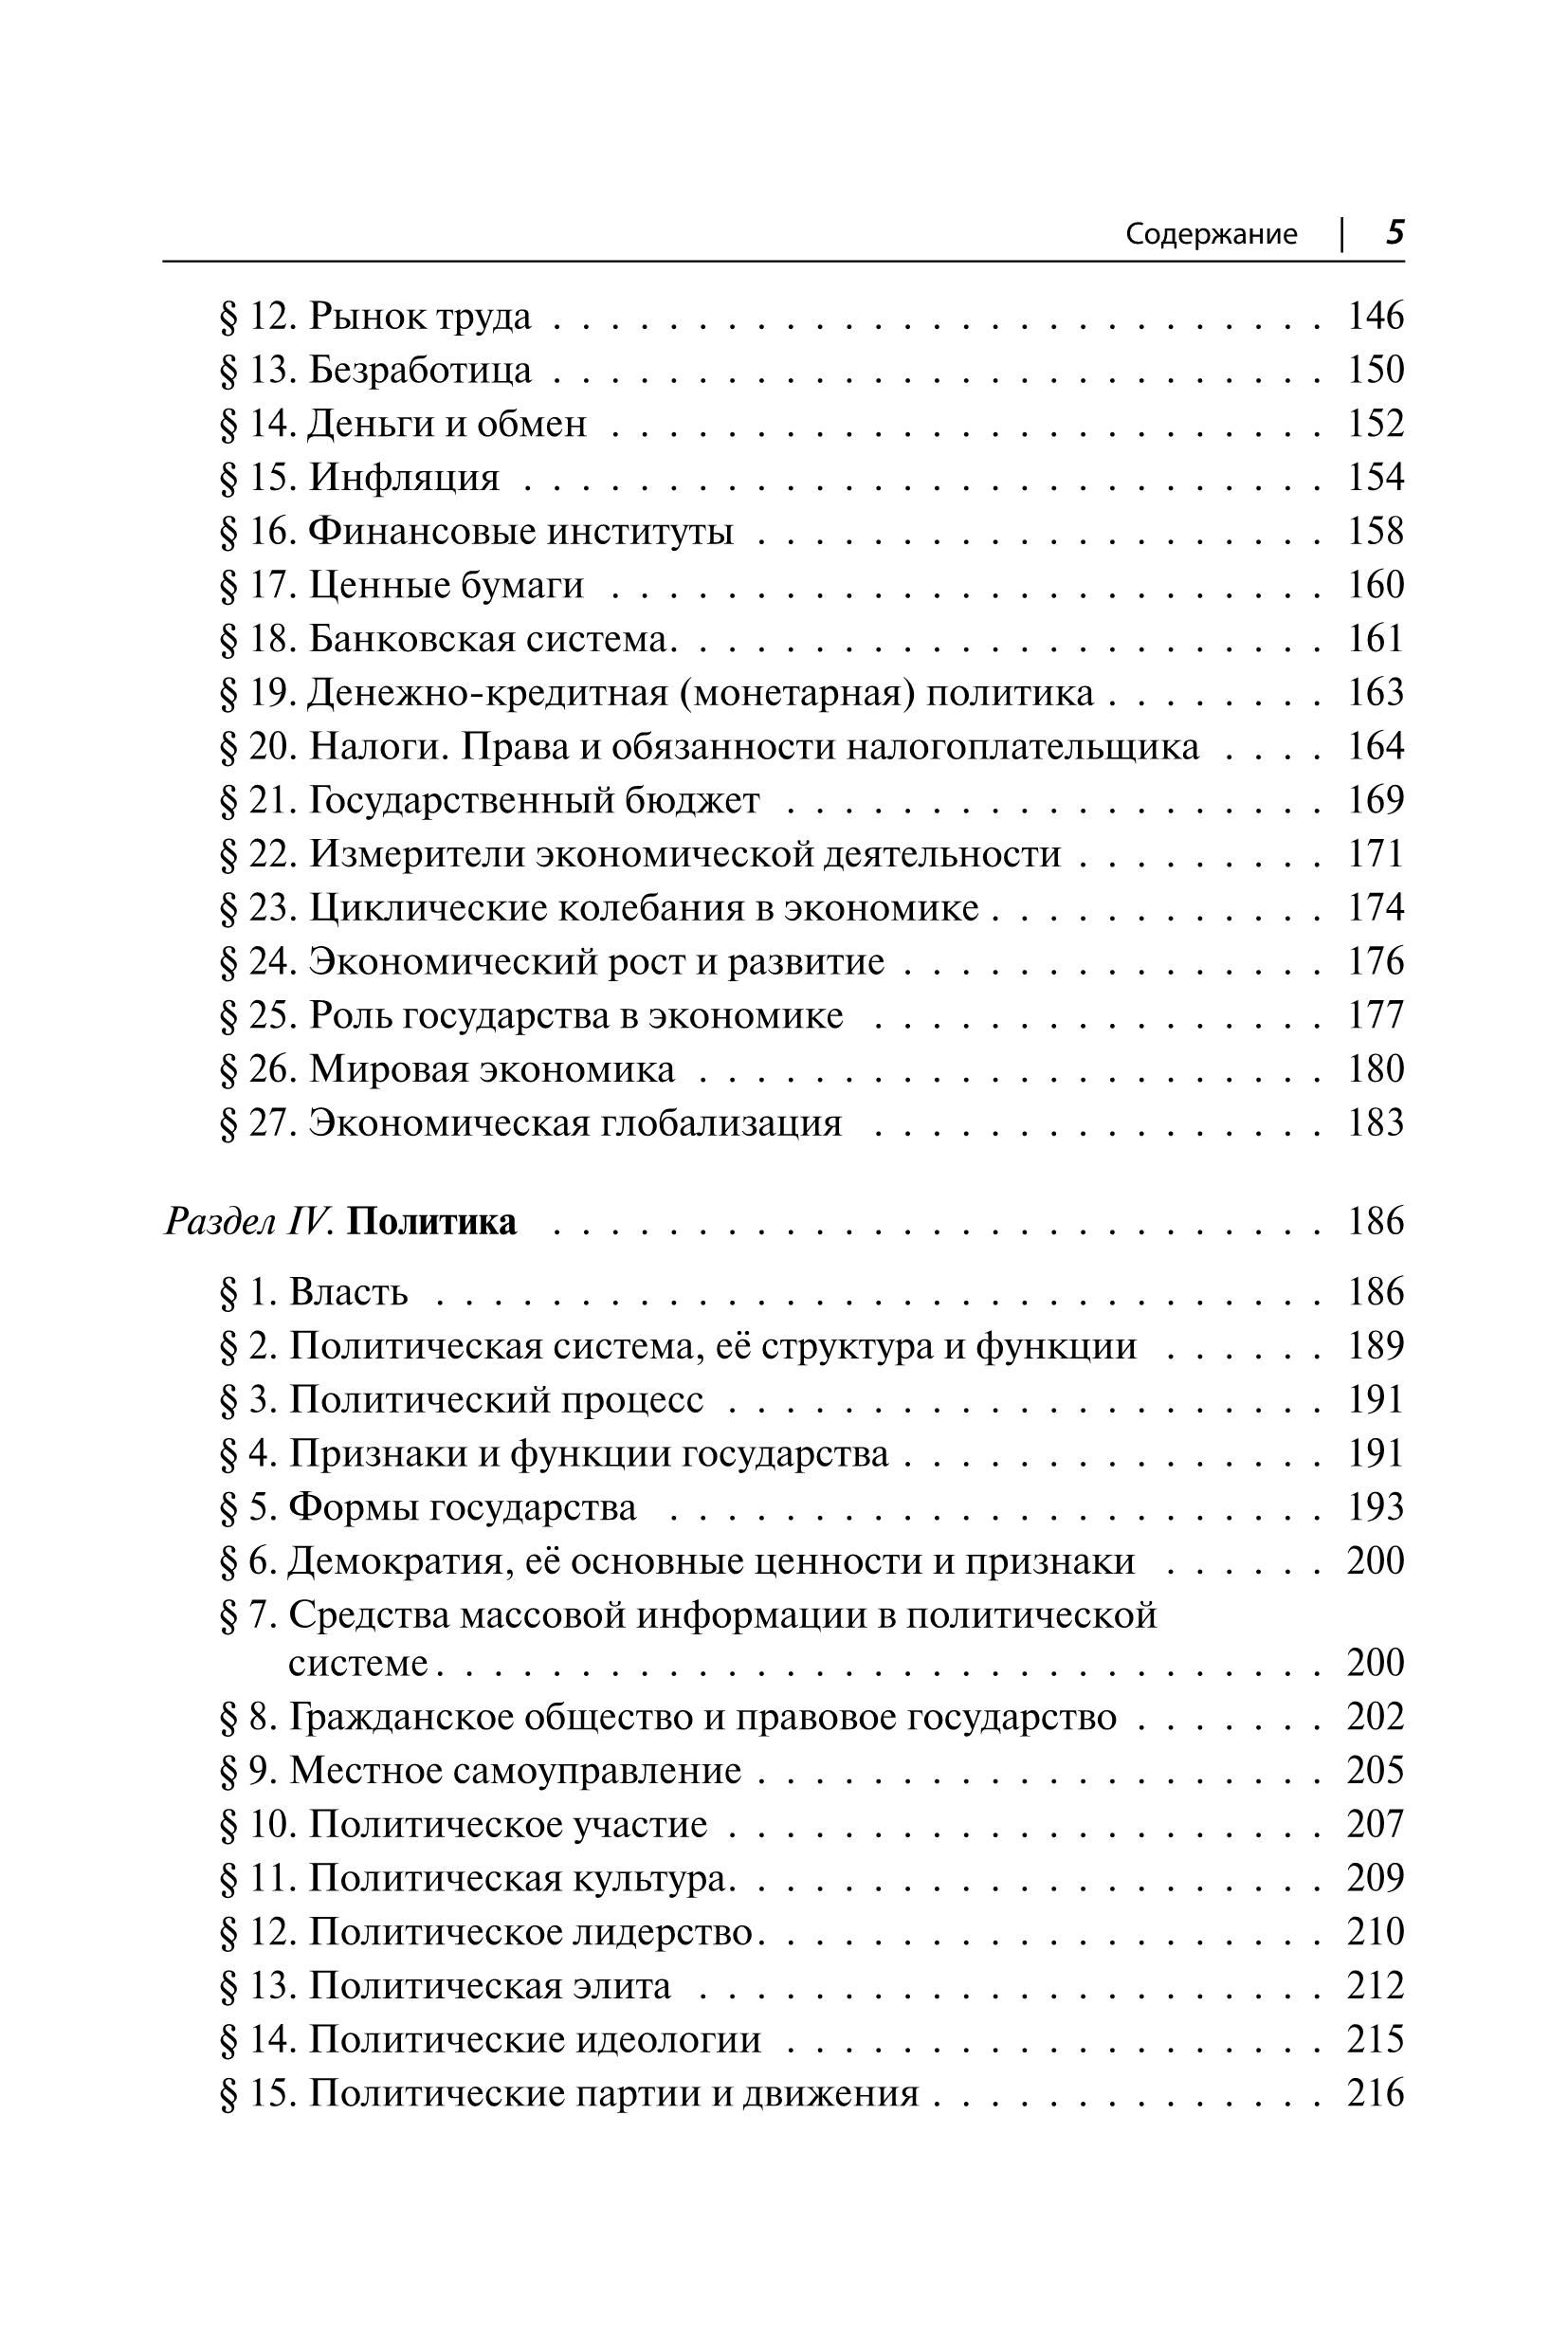 Обществознание в таблицах и схемах. ЕГЭ. 3-е изд.